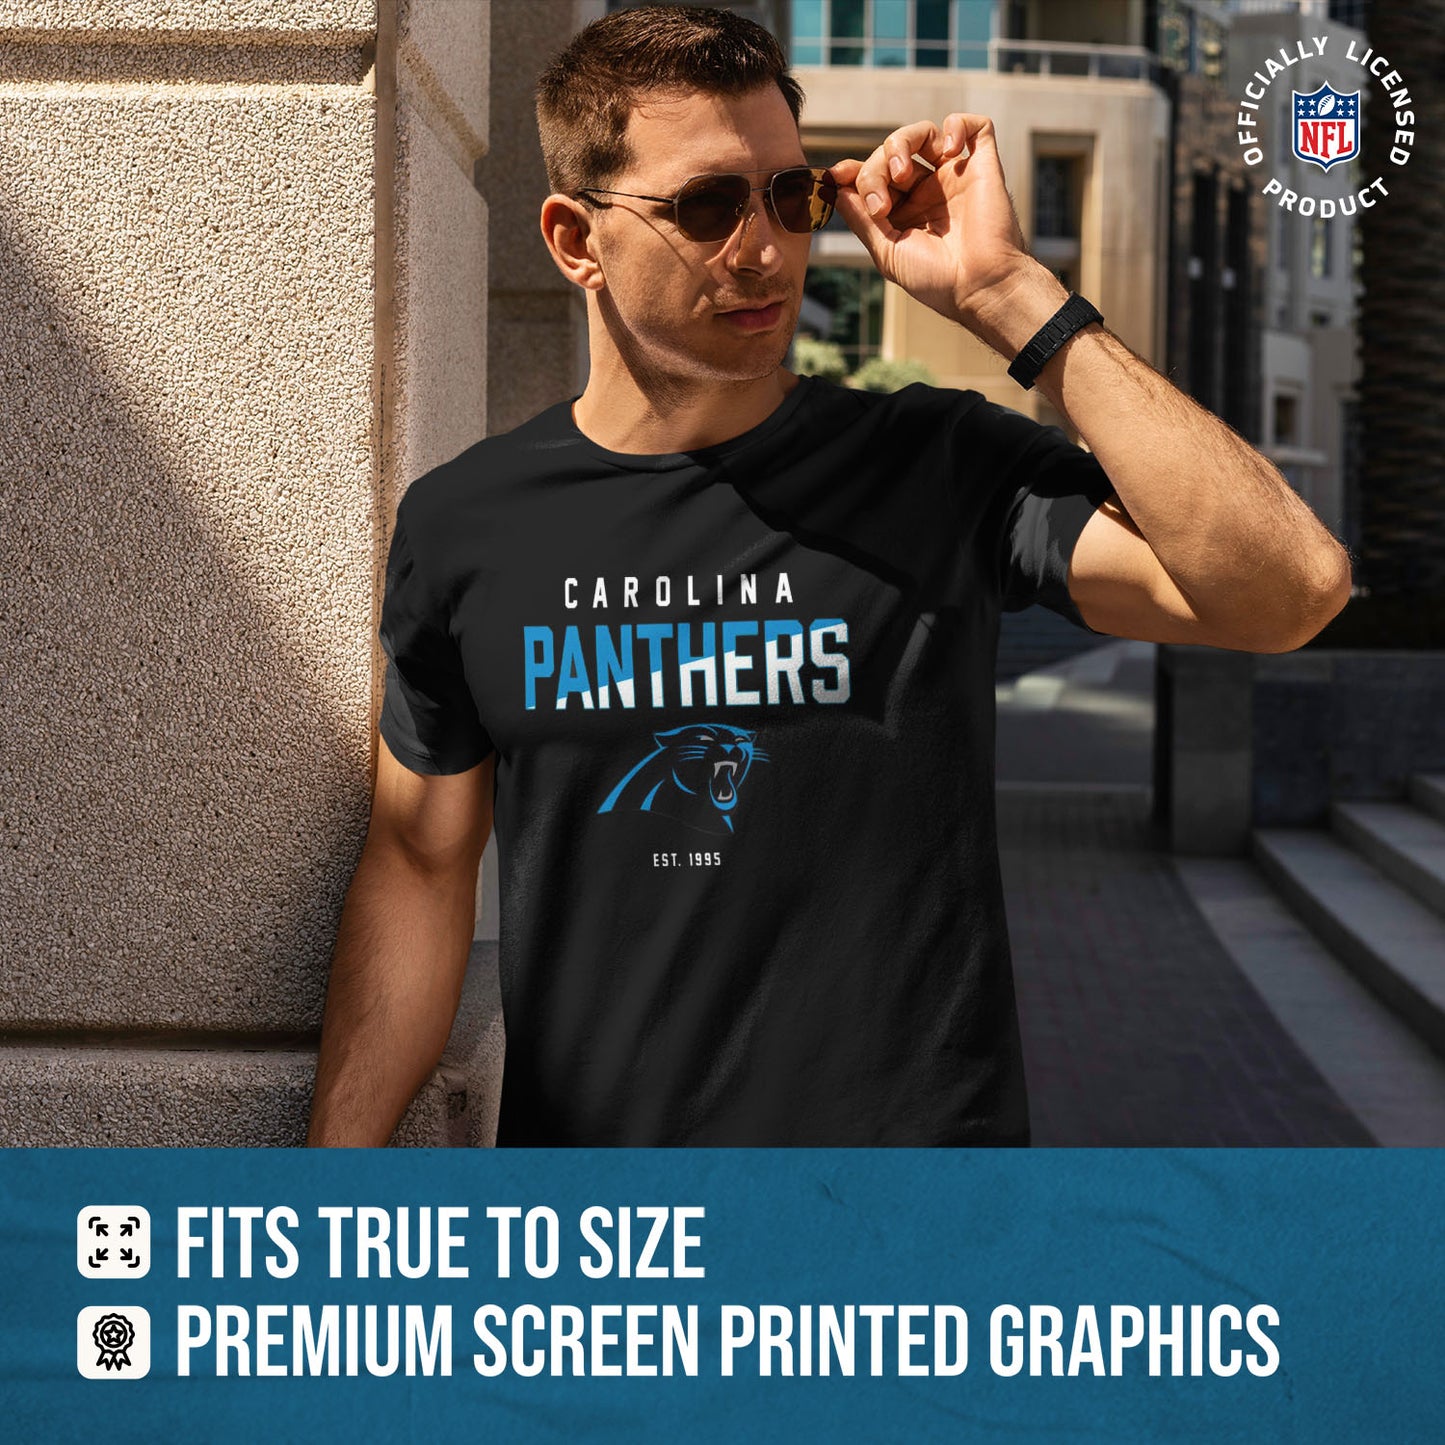 Carolina Panthers Adult NFL Diagonal Fade Color Block T-Shirt - Black